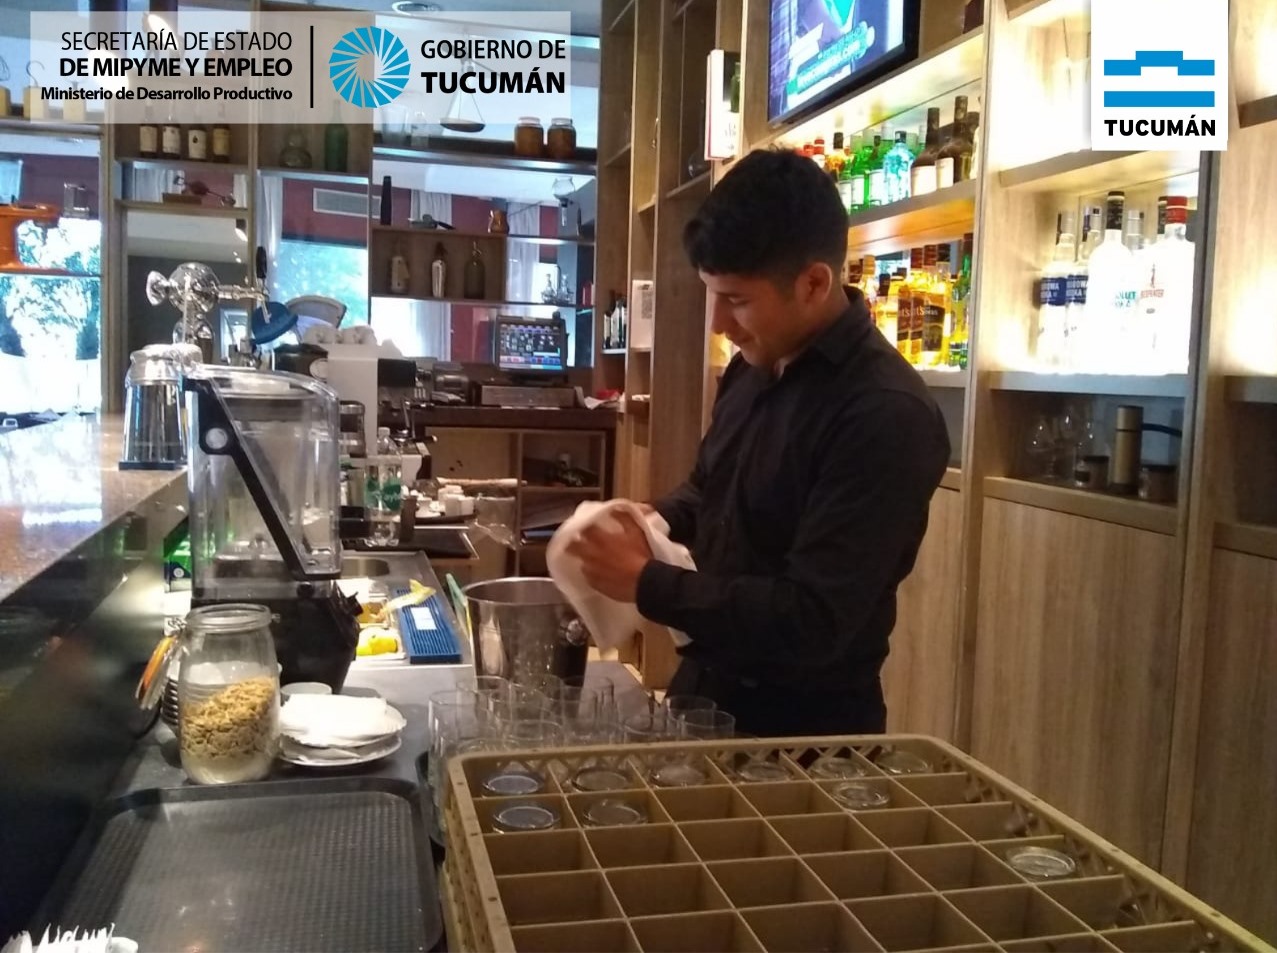 Importante Hotel de Tucumán incorpora Intermediación Laboral